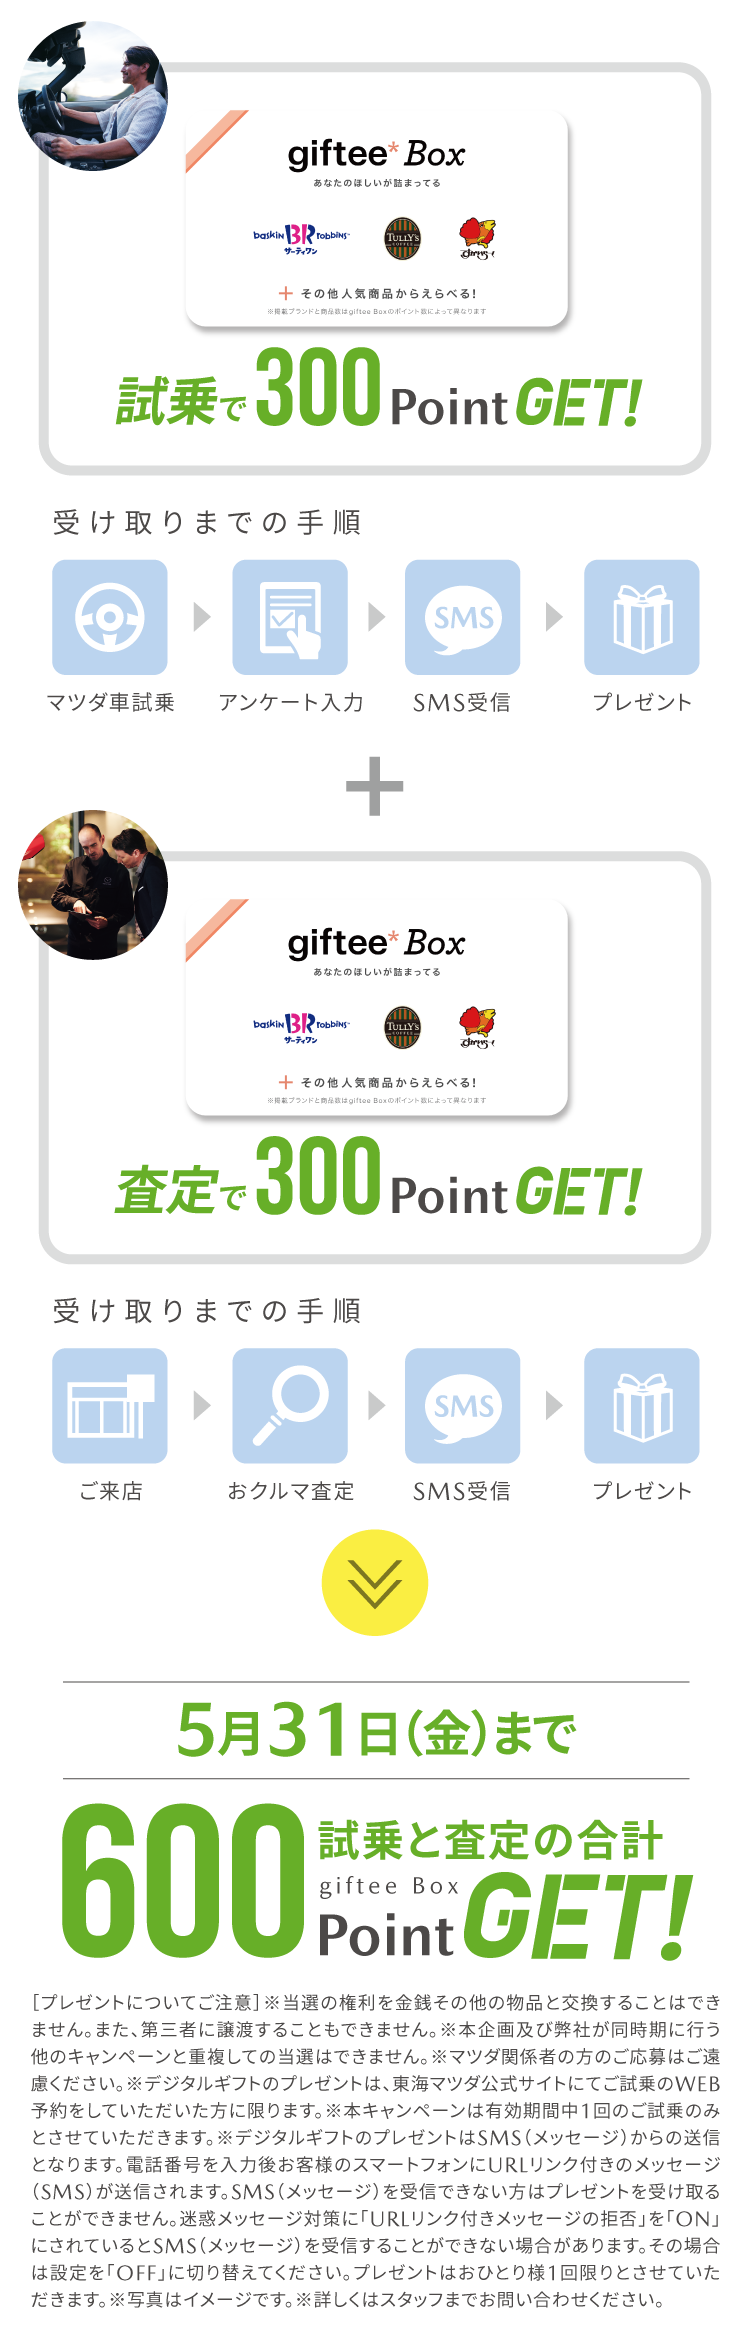 試乗と査定でデジタルギフト「giftee box」600PointGET